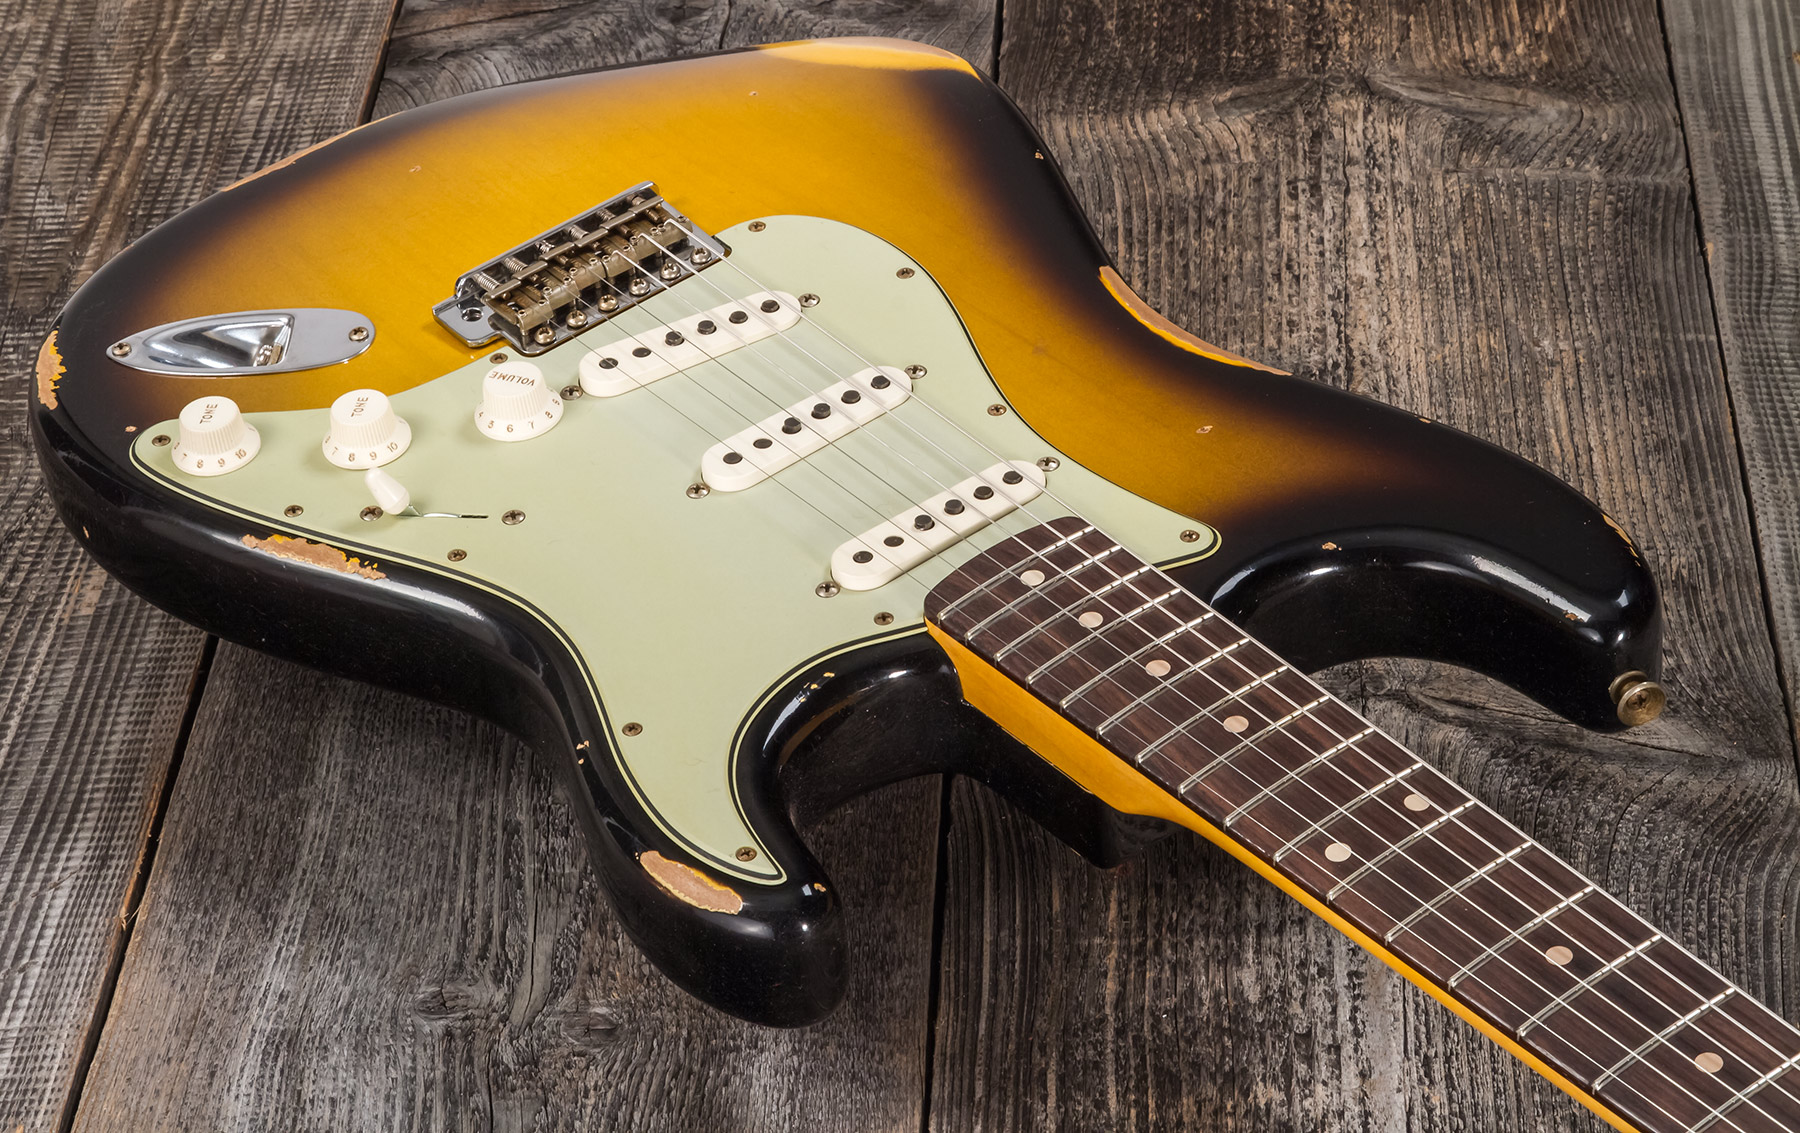 Fender Custom Shop Strat 1959 3s Trem Rw #r117661 - Relic 2-color Sunburst - E-Gitarre in Str-Form - Variation 2